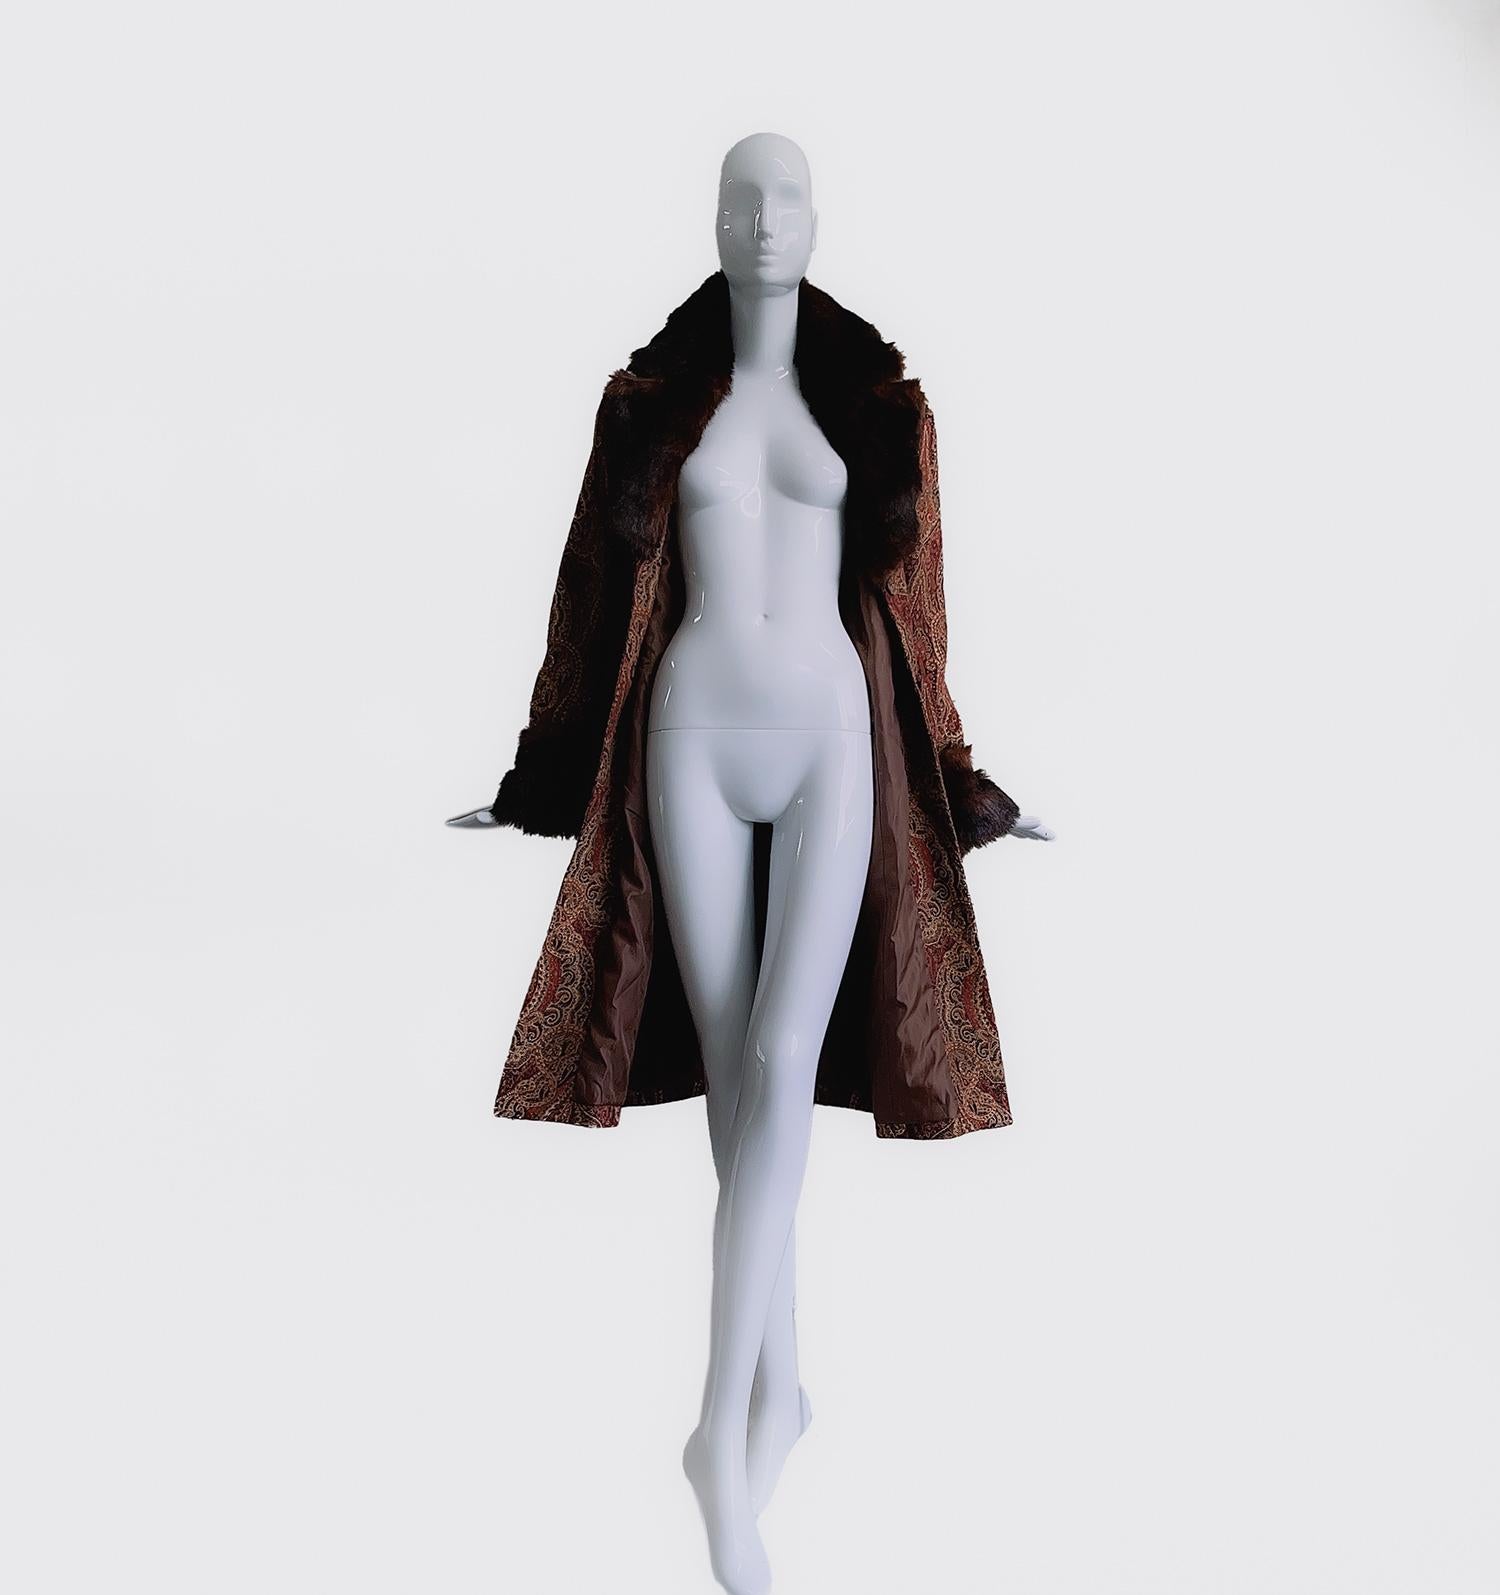 
Dies ist ein atemberaubender Mantel aus den späten 1970er Jahren mit weichem Kunstpelzkragen und Manschetten und schönem verzierten Stoff.
Der Schnitt und die Form scheinen von den Flapper-Mänteln der 1920er Jahre inspiriert zu sein, und die großen